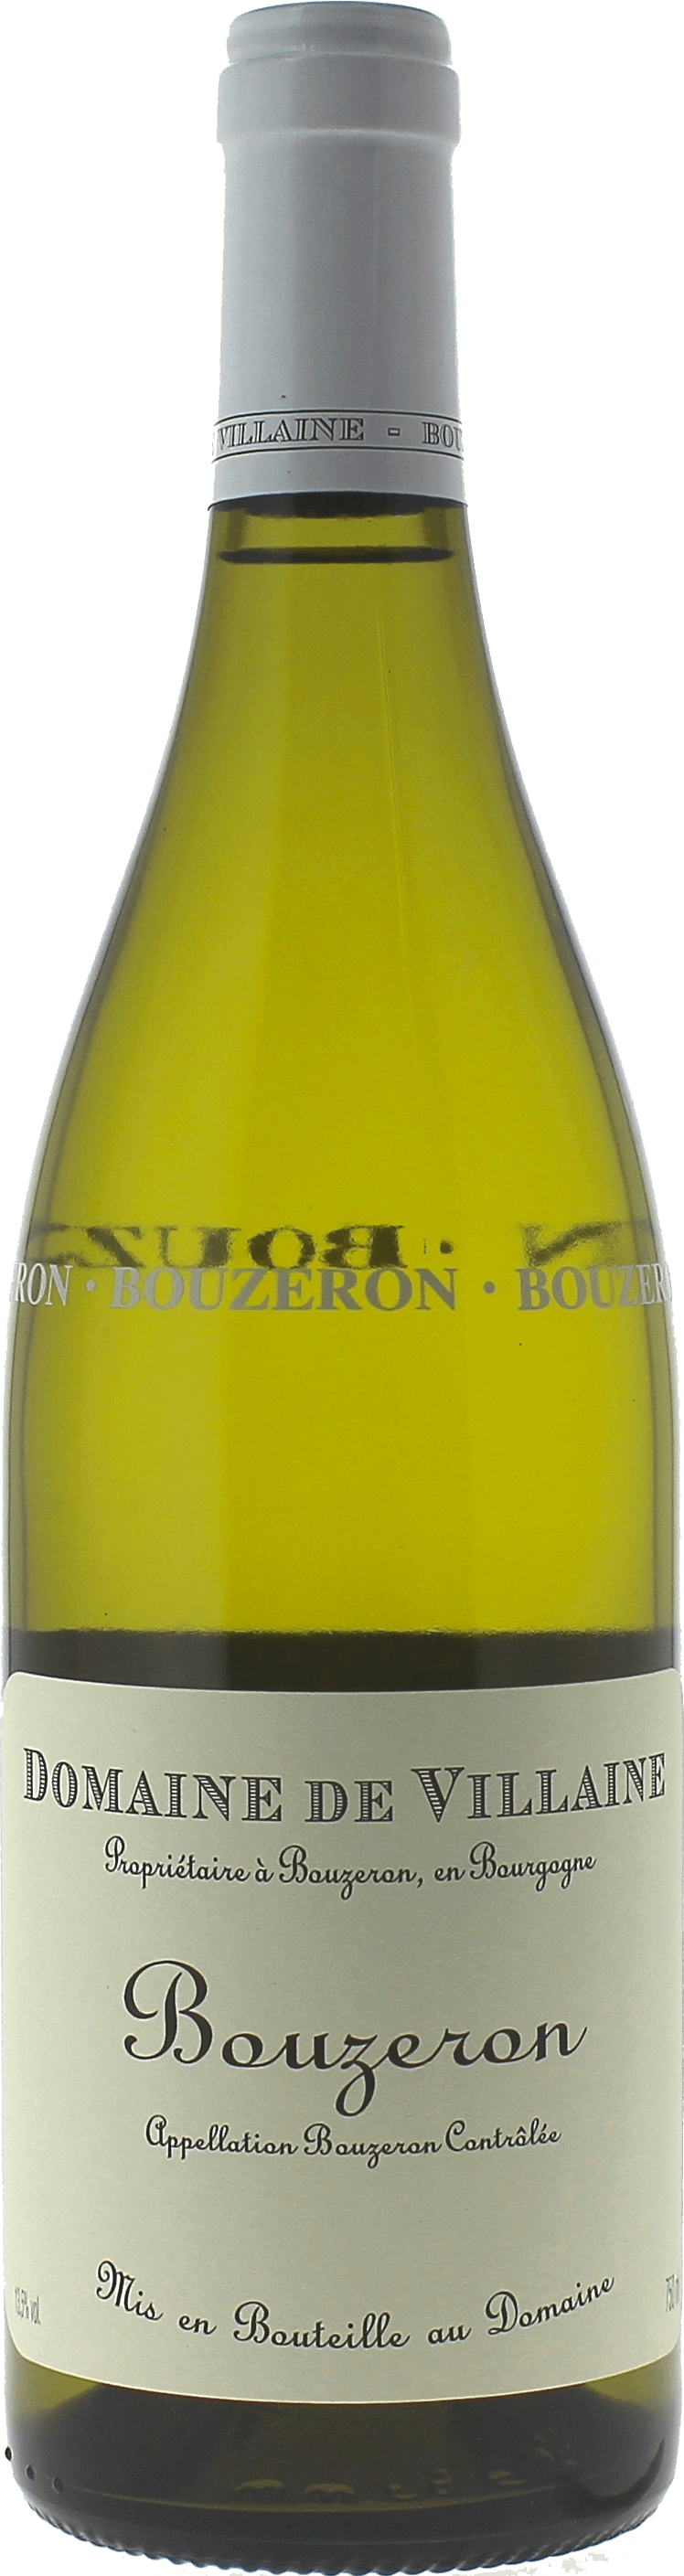 Bouzeron aligot 2021 Domaine DE VILLAINE, Bourgogne blanc